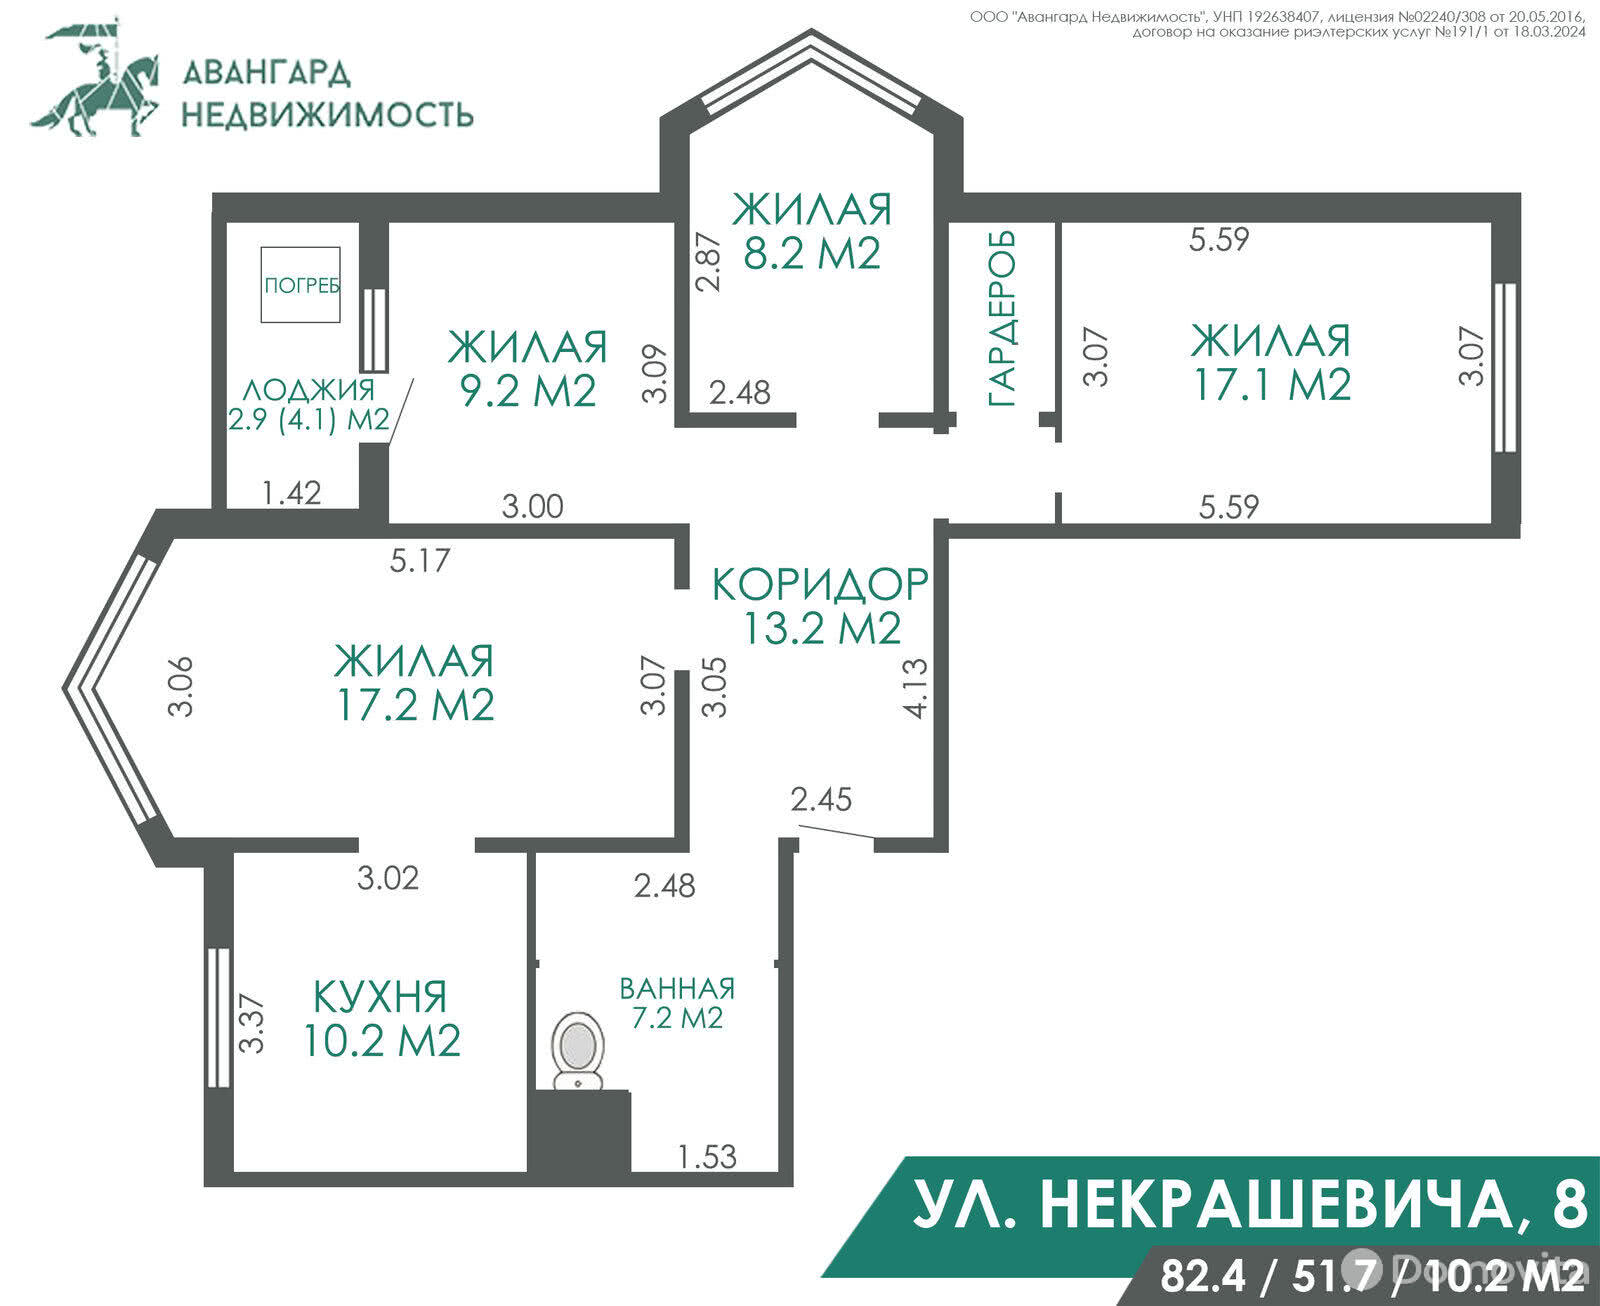 Стоимость продажи квартиры, Минск, ул. Некрашевича, д. 8